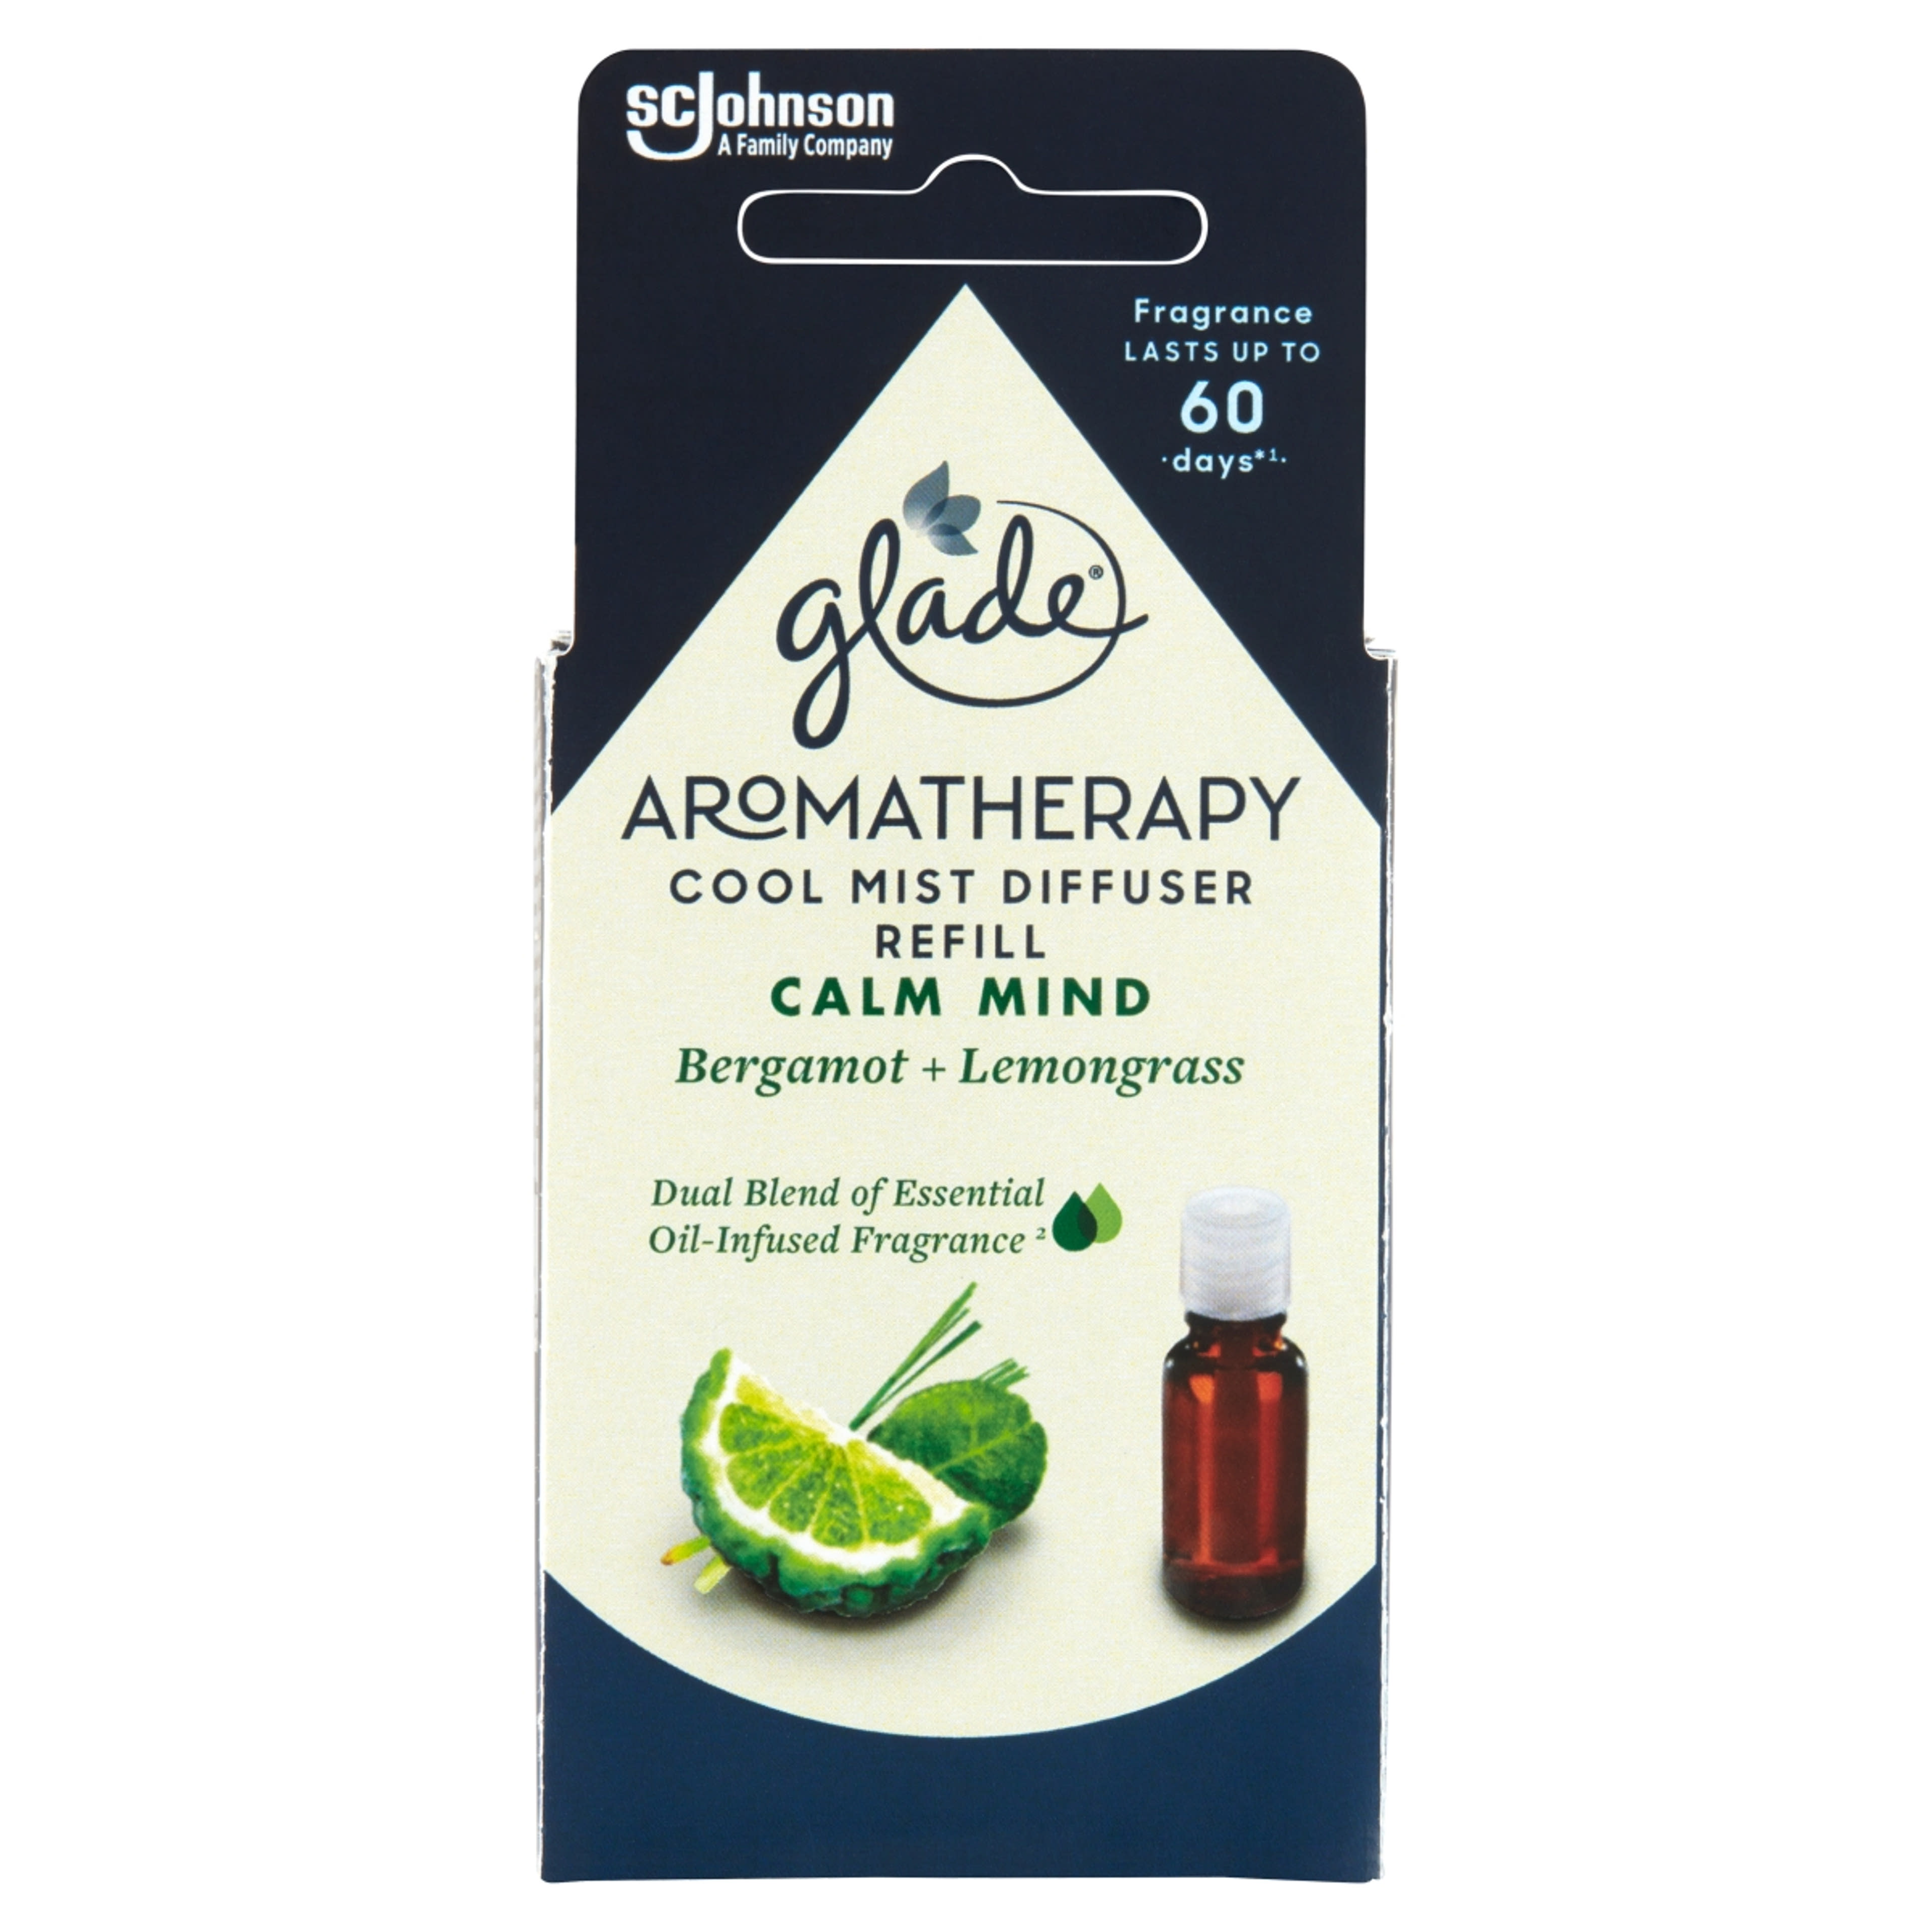 Glade Aromatherapy Cool Mist Diffuser párologtató utántöltő - Calm Mind - 17,4 ml